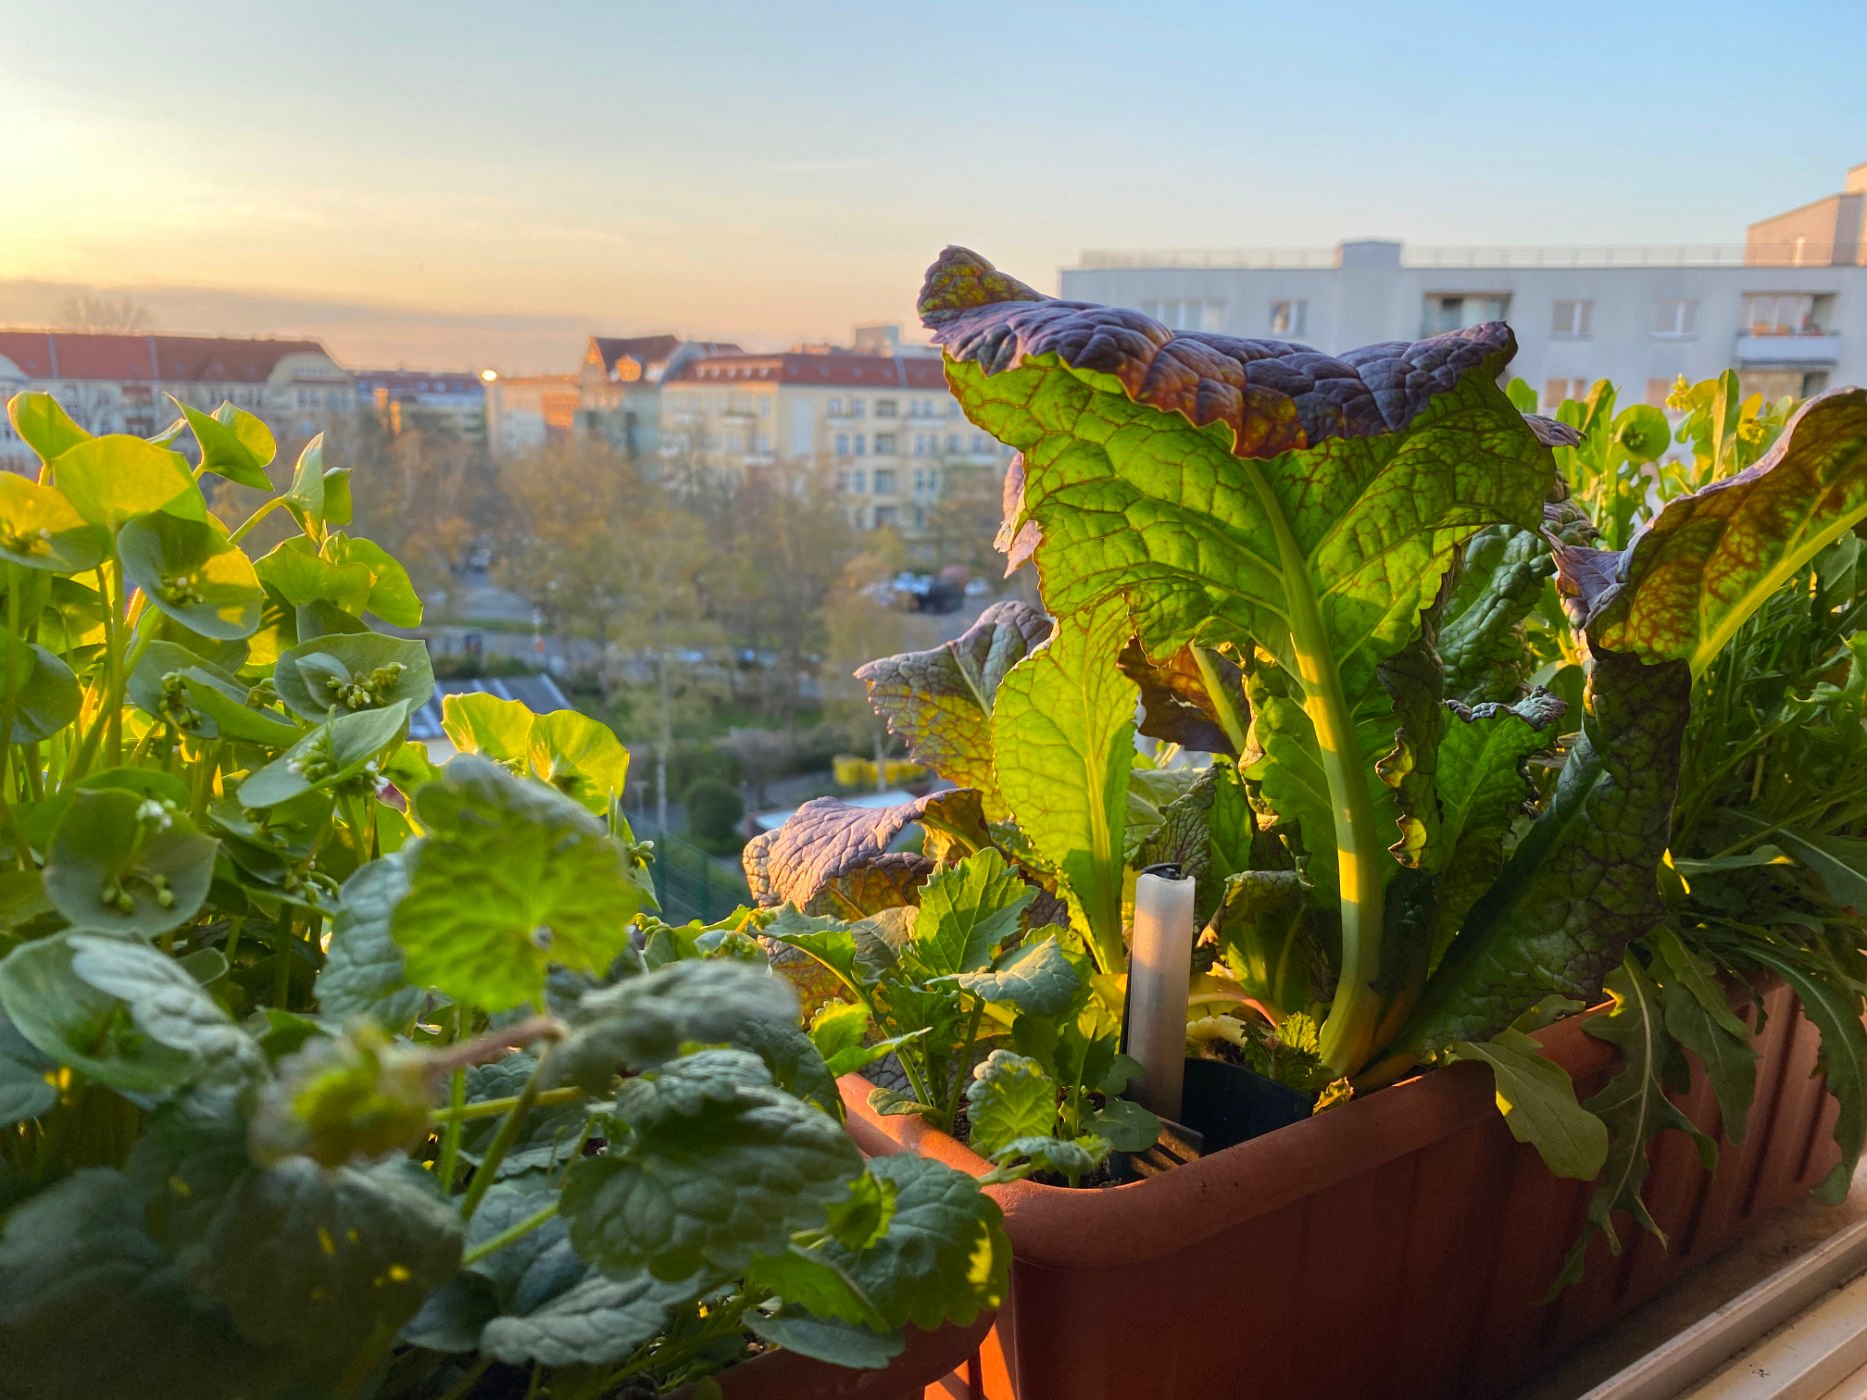 web 10. Balkonkasten auf dem Fensterbrett mit Wintergemuese Winterpostelein Gundermann Asia Salat Red Giant Rucola IMG 0408